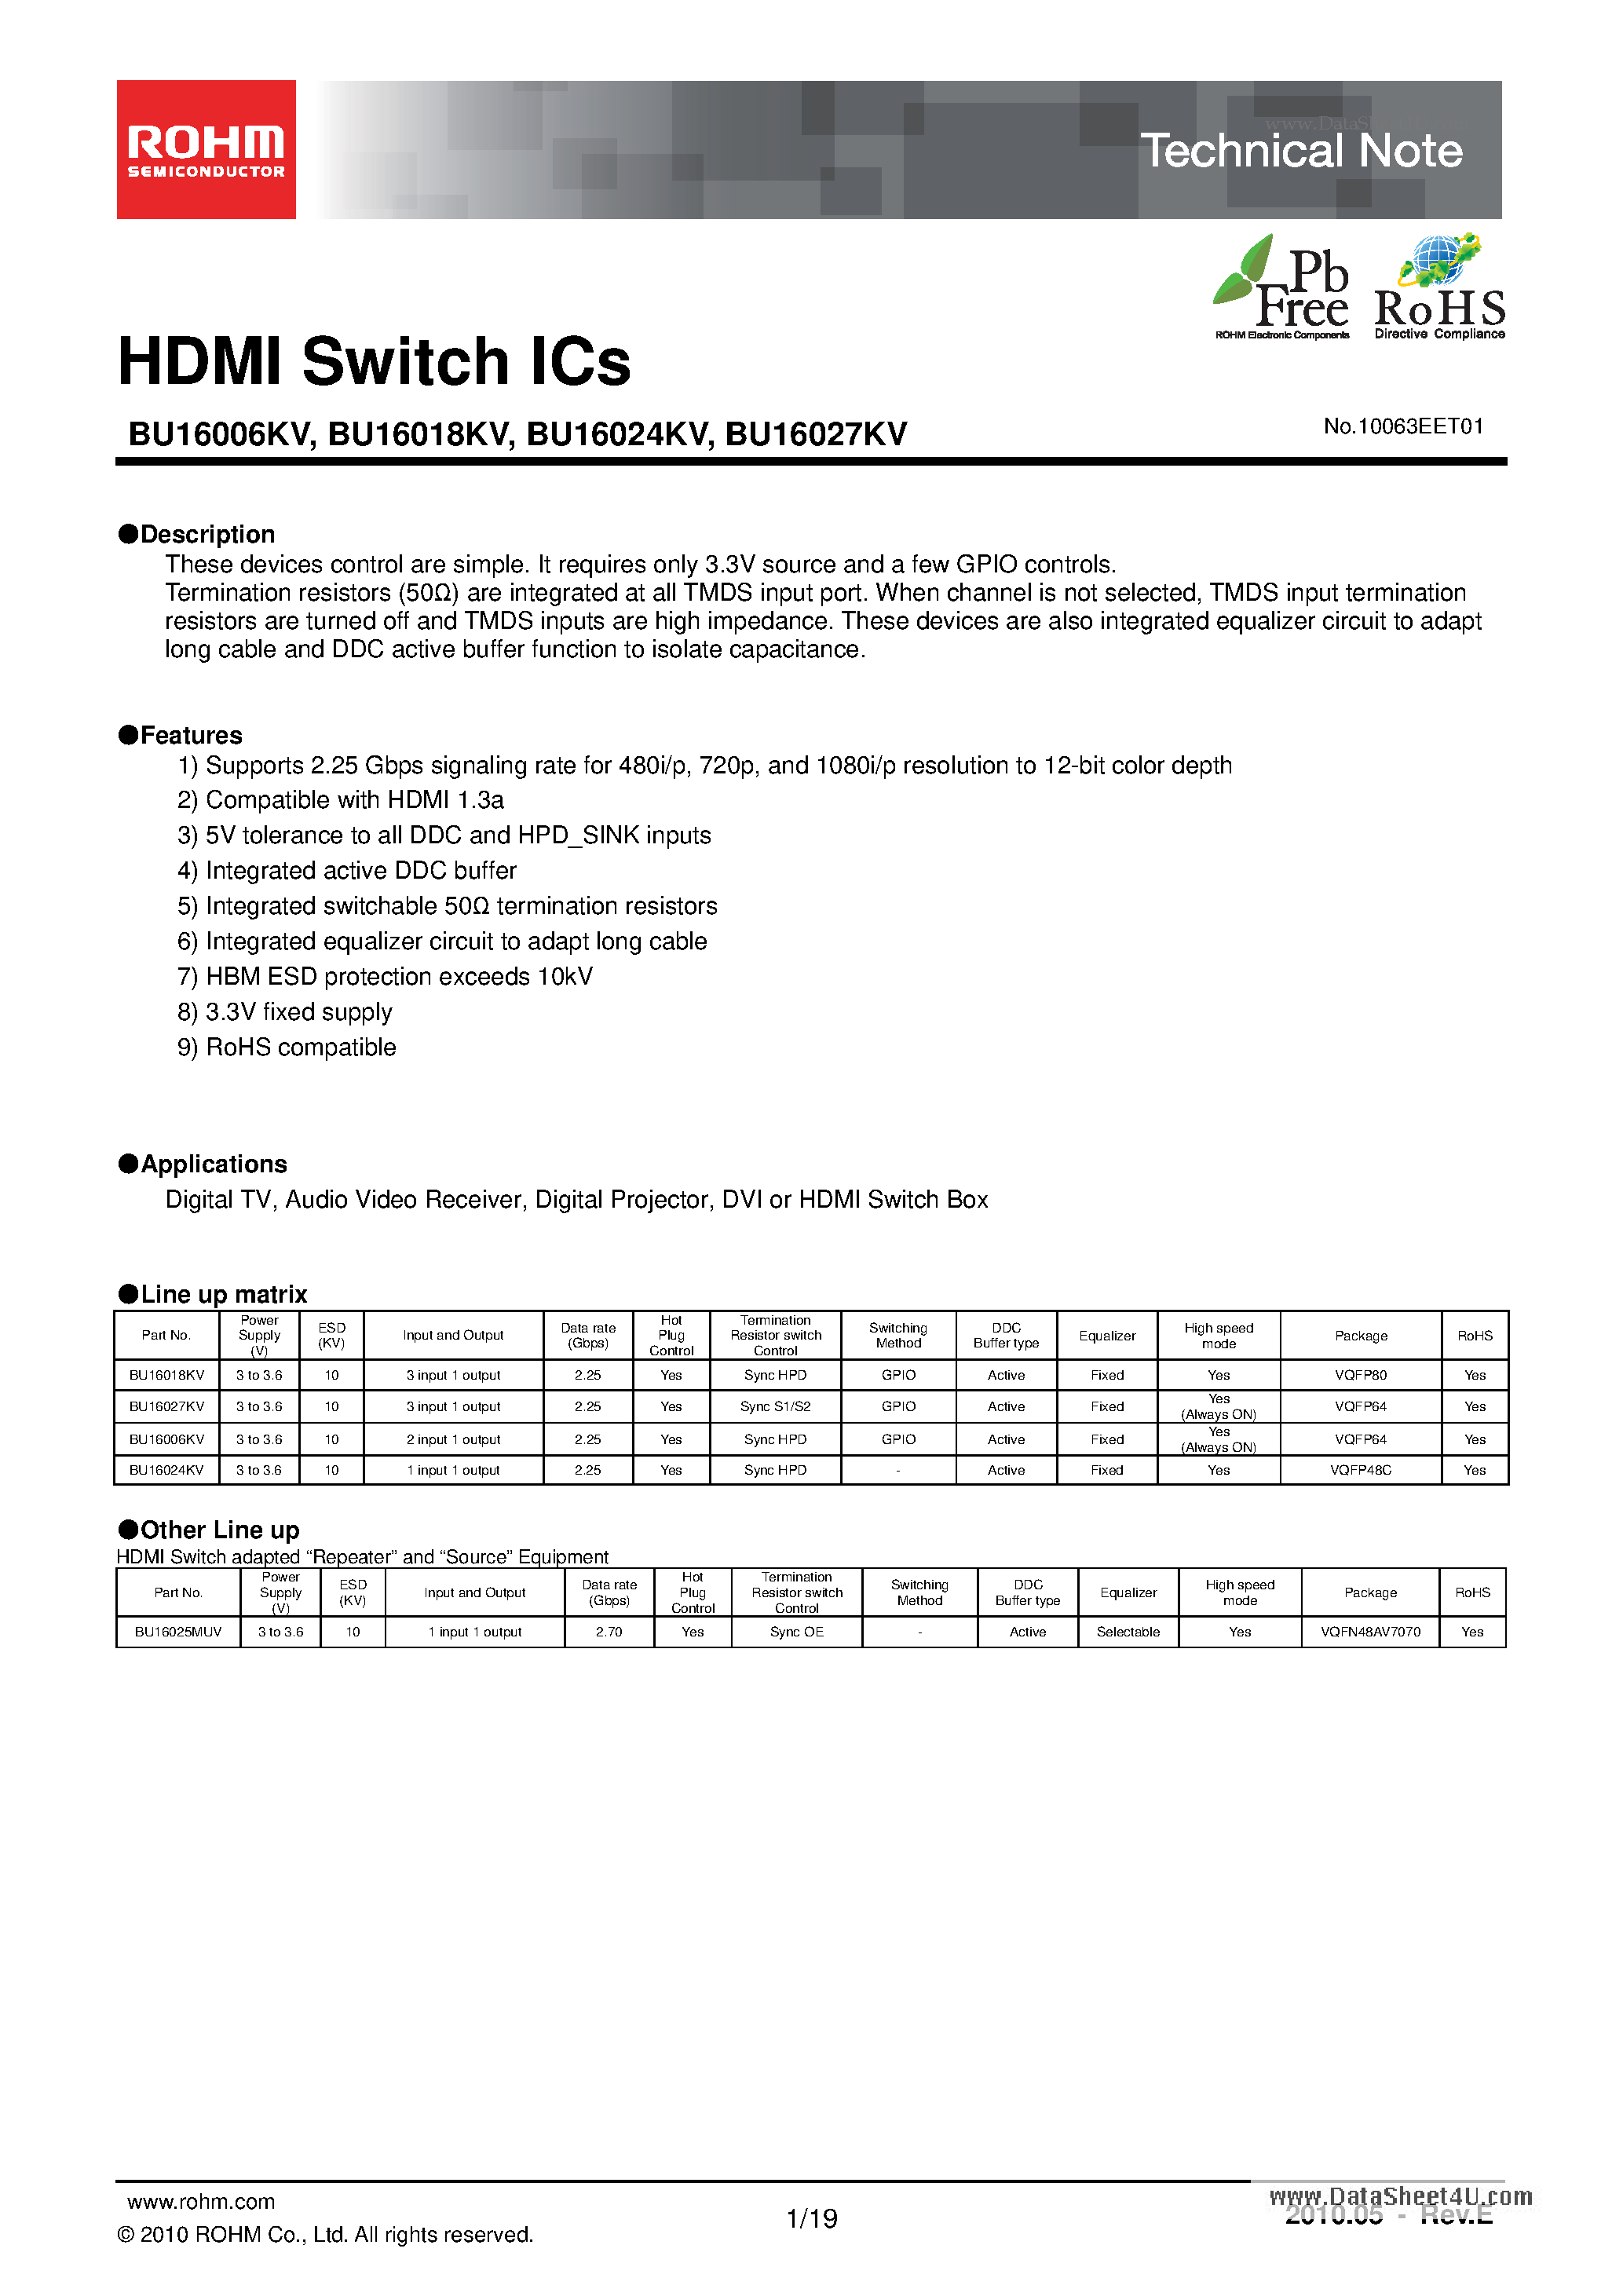 Даташит BU16018KV-HDMI Switch ICs страница 1